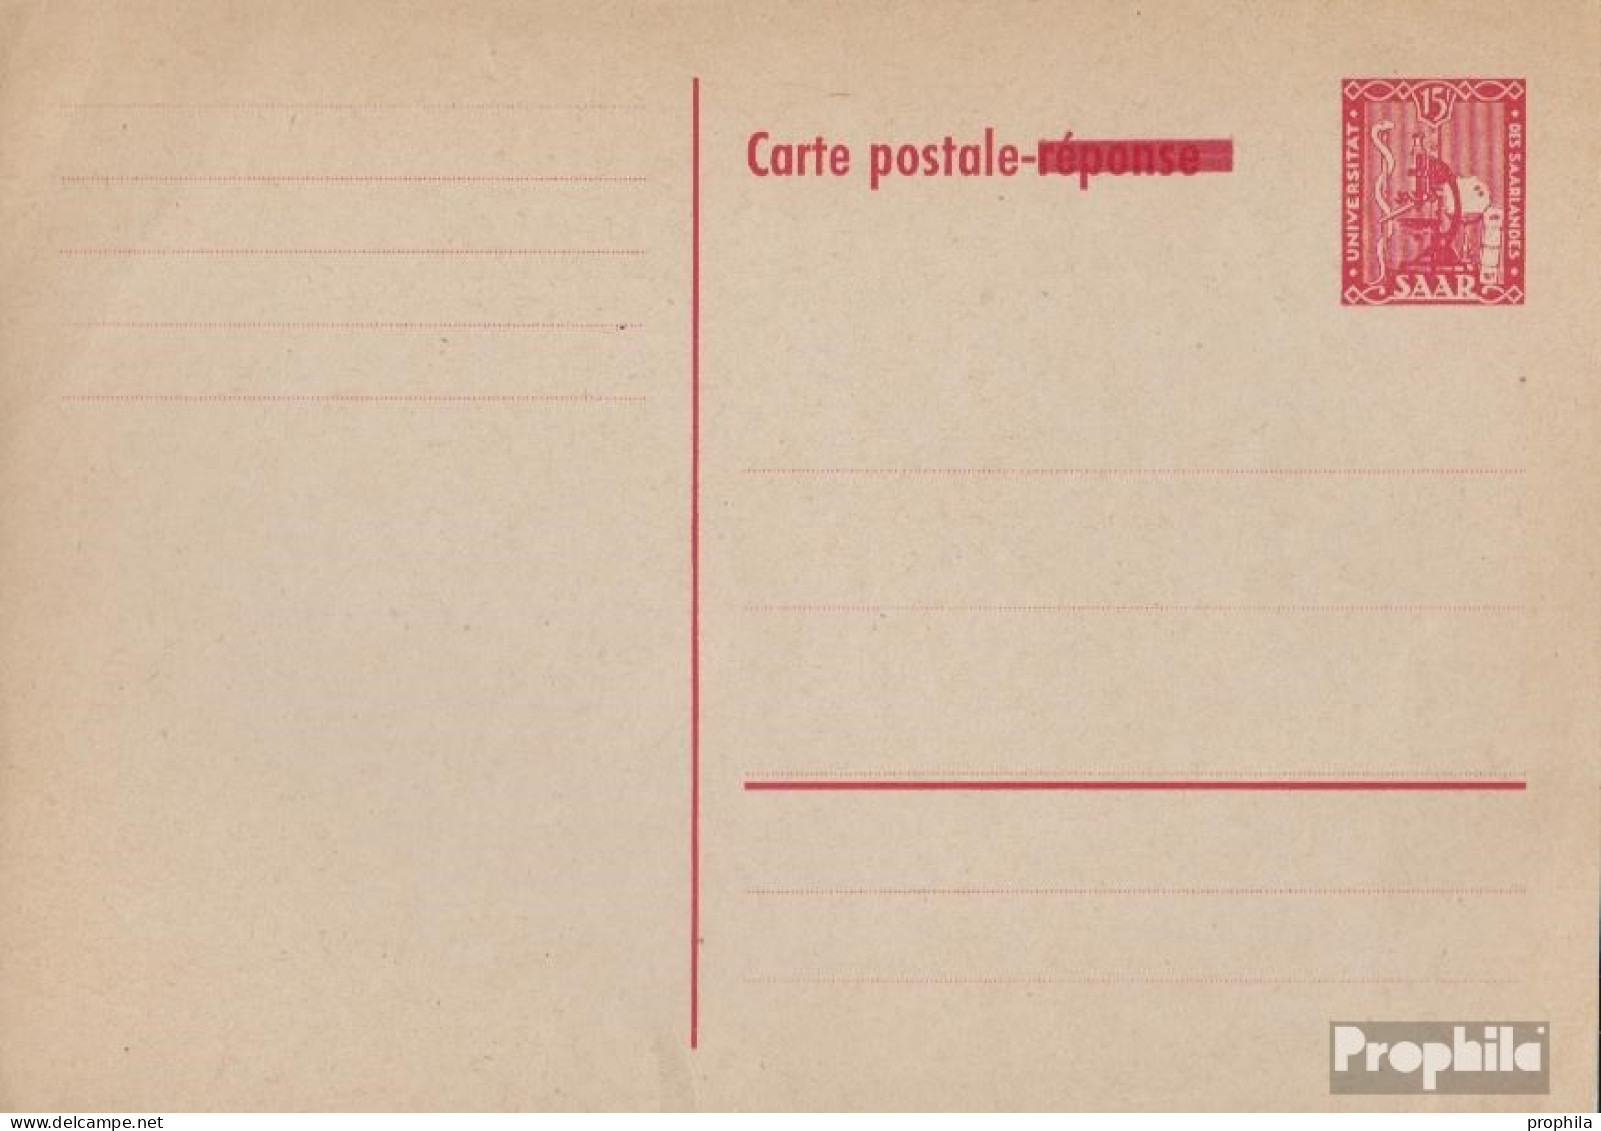 Saarland P38A Amtliche Postkarte Ungebraucht 1954 Aufdruckausgabe - Enteros Postales